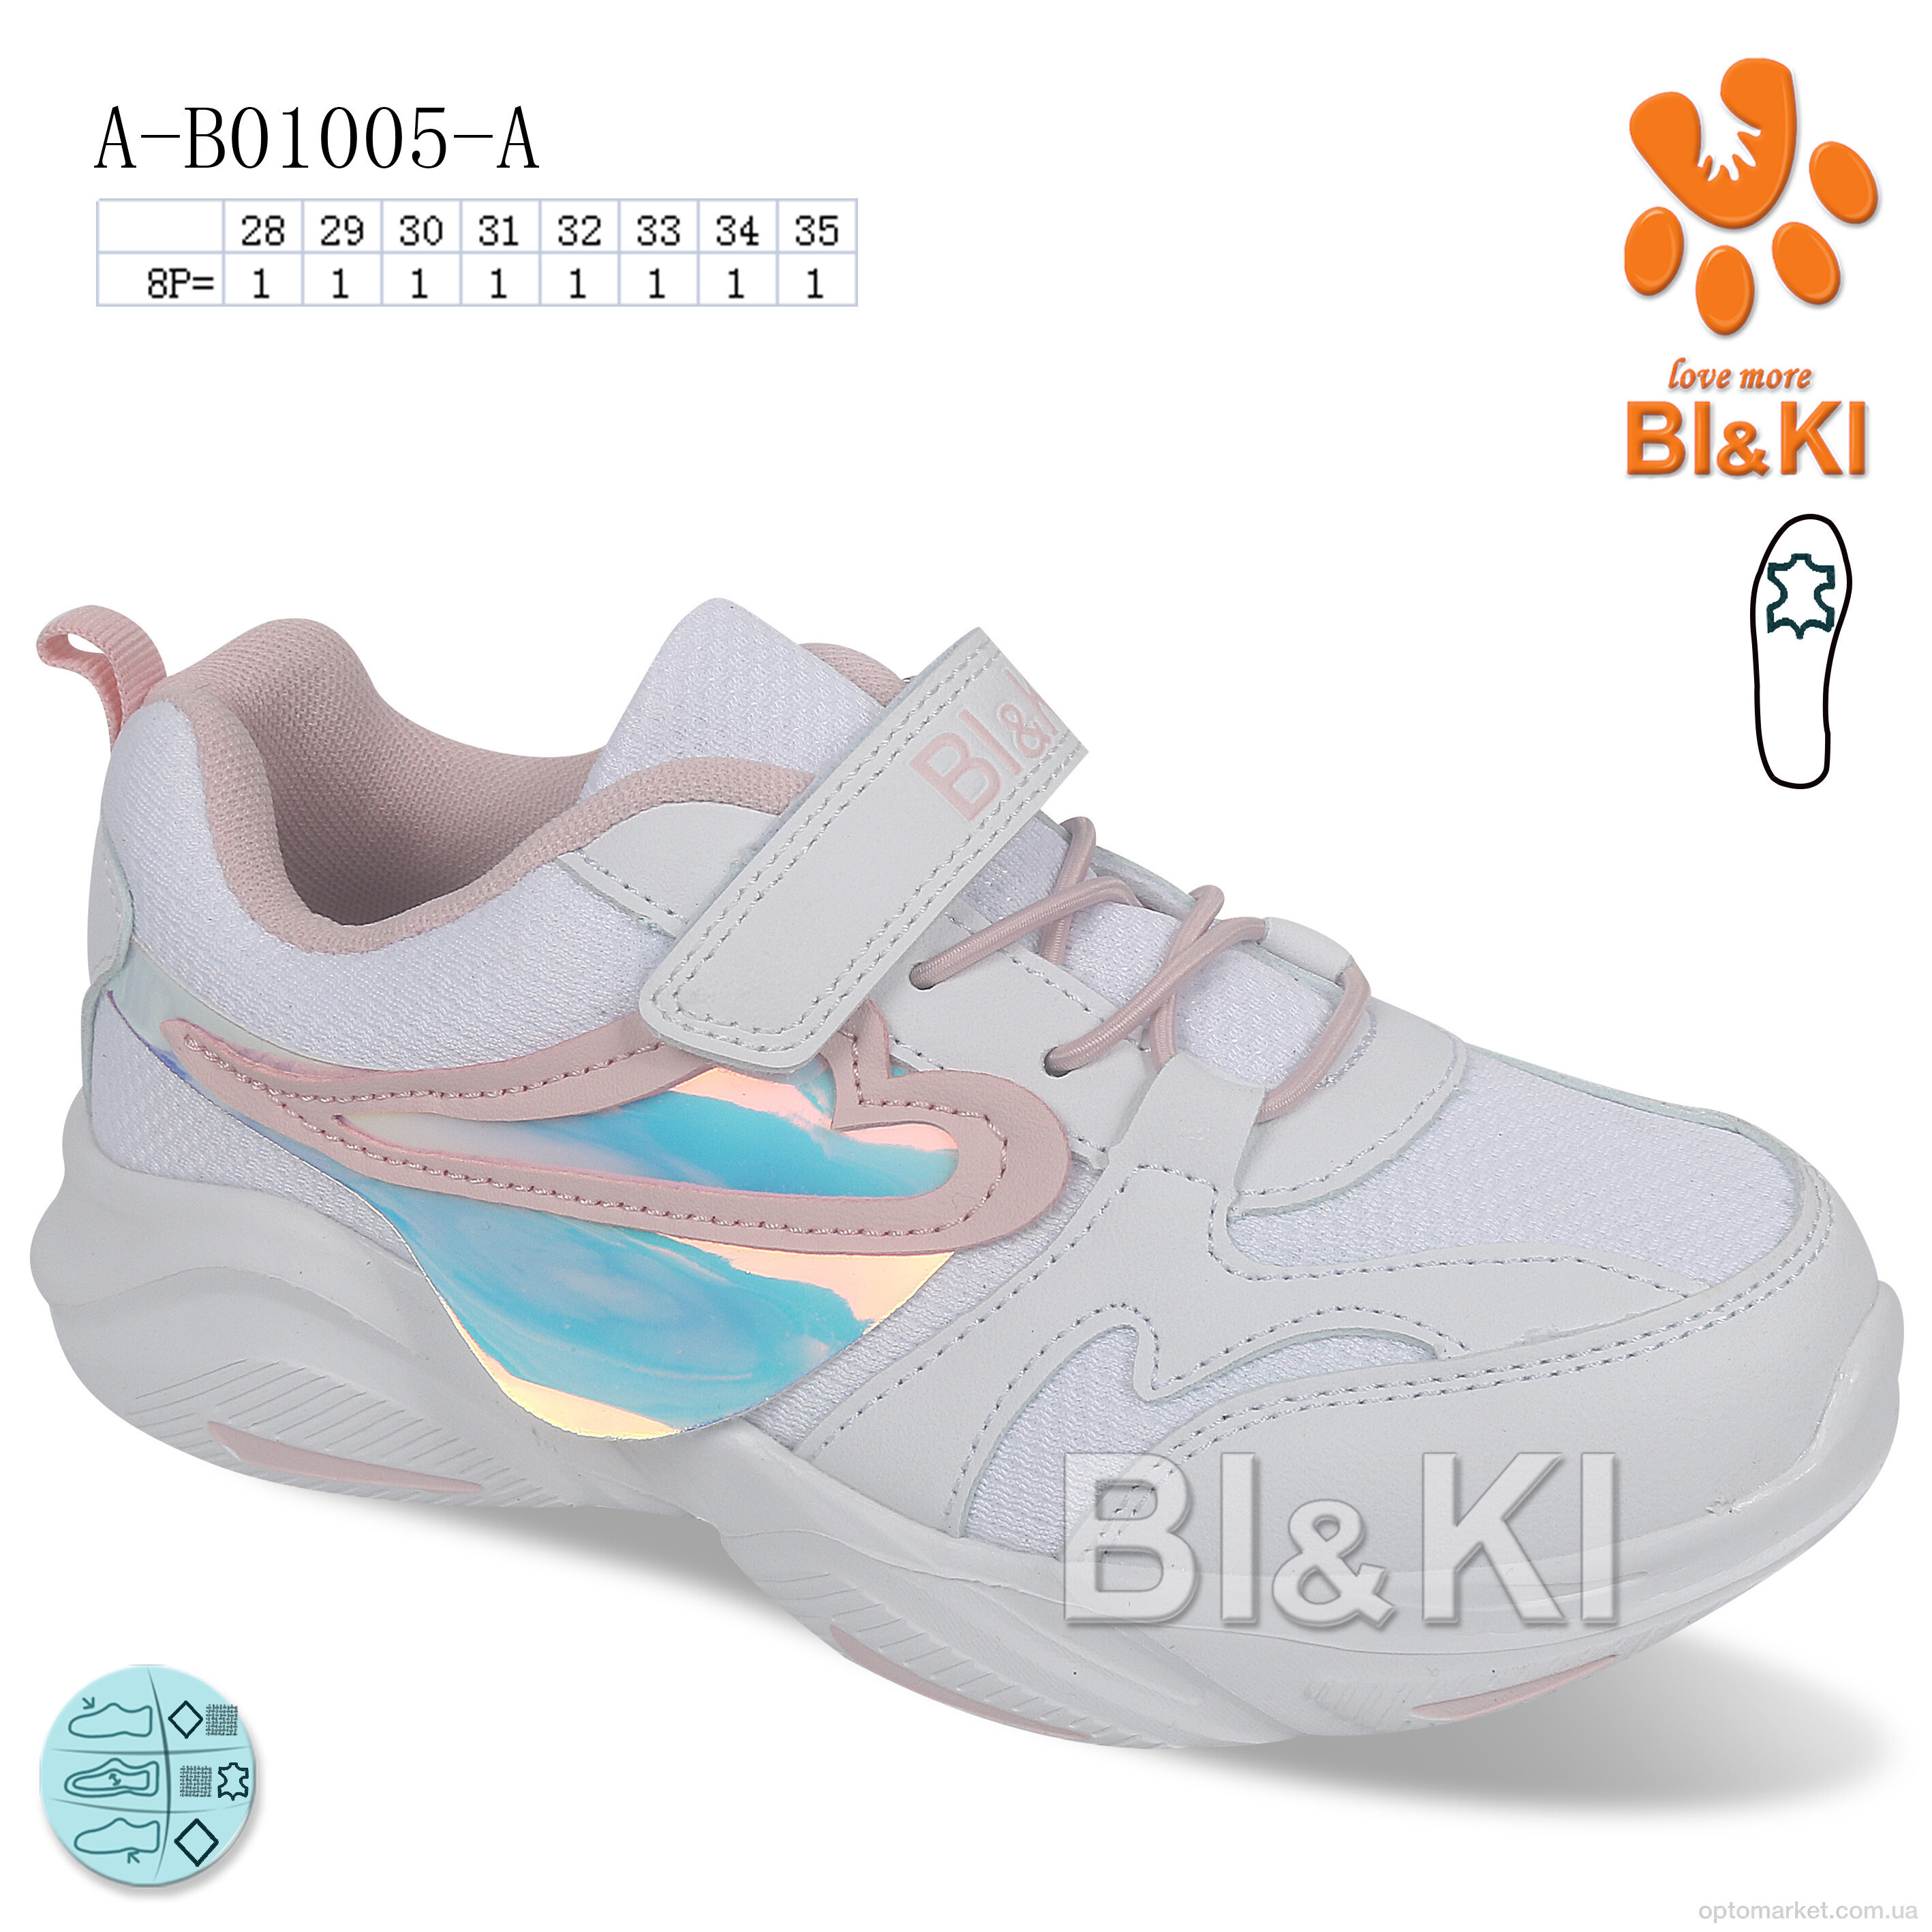 Купить Кросівки дитячі A-B01005-A Bi&Ki білий, фото 1